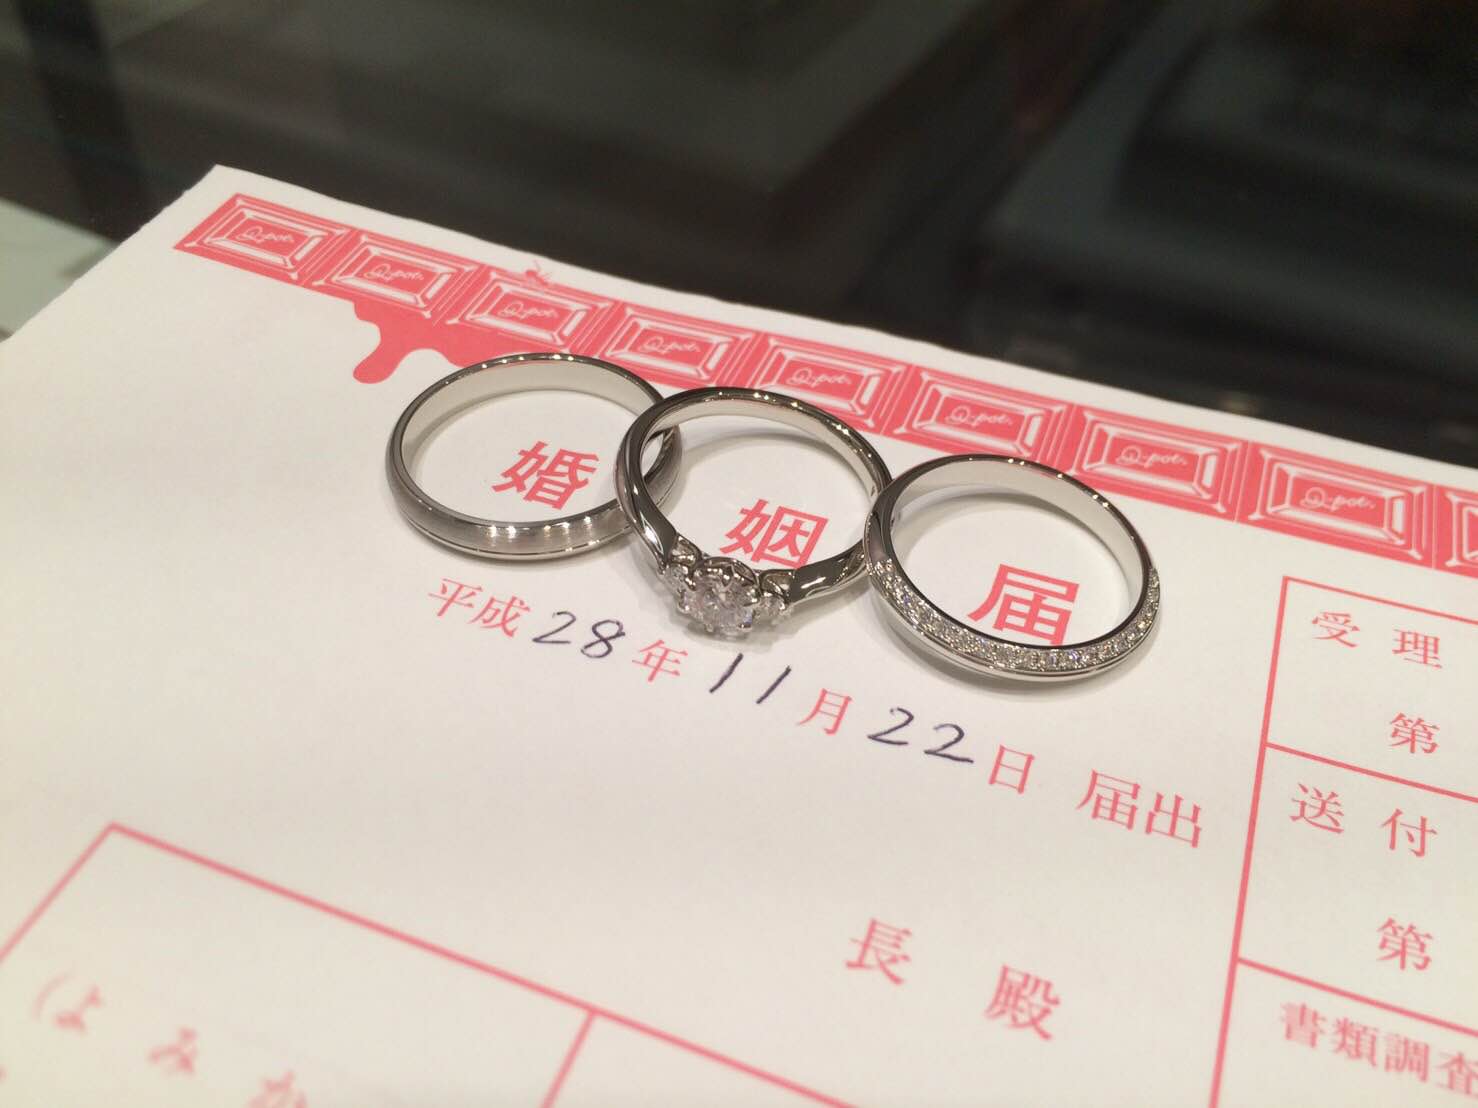 横浜 夏のビッグイベント 横浜元町店ブログ 婚約約指輪 結婚指輪のi Primo アイプリモ カップルに人気の婚約指輪 結婚指輪 はi Primo アイプリモ